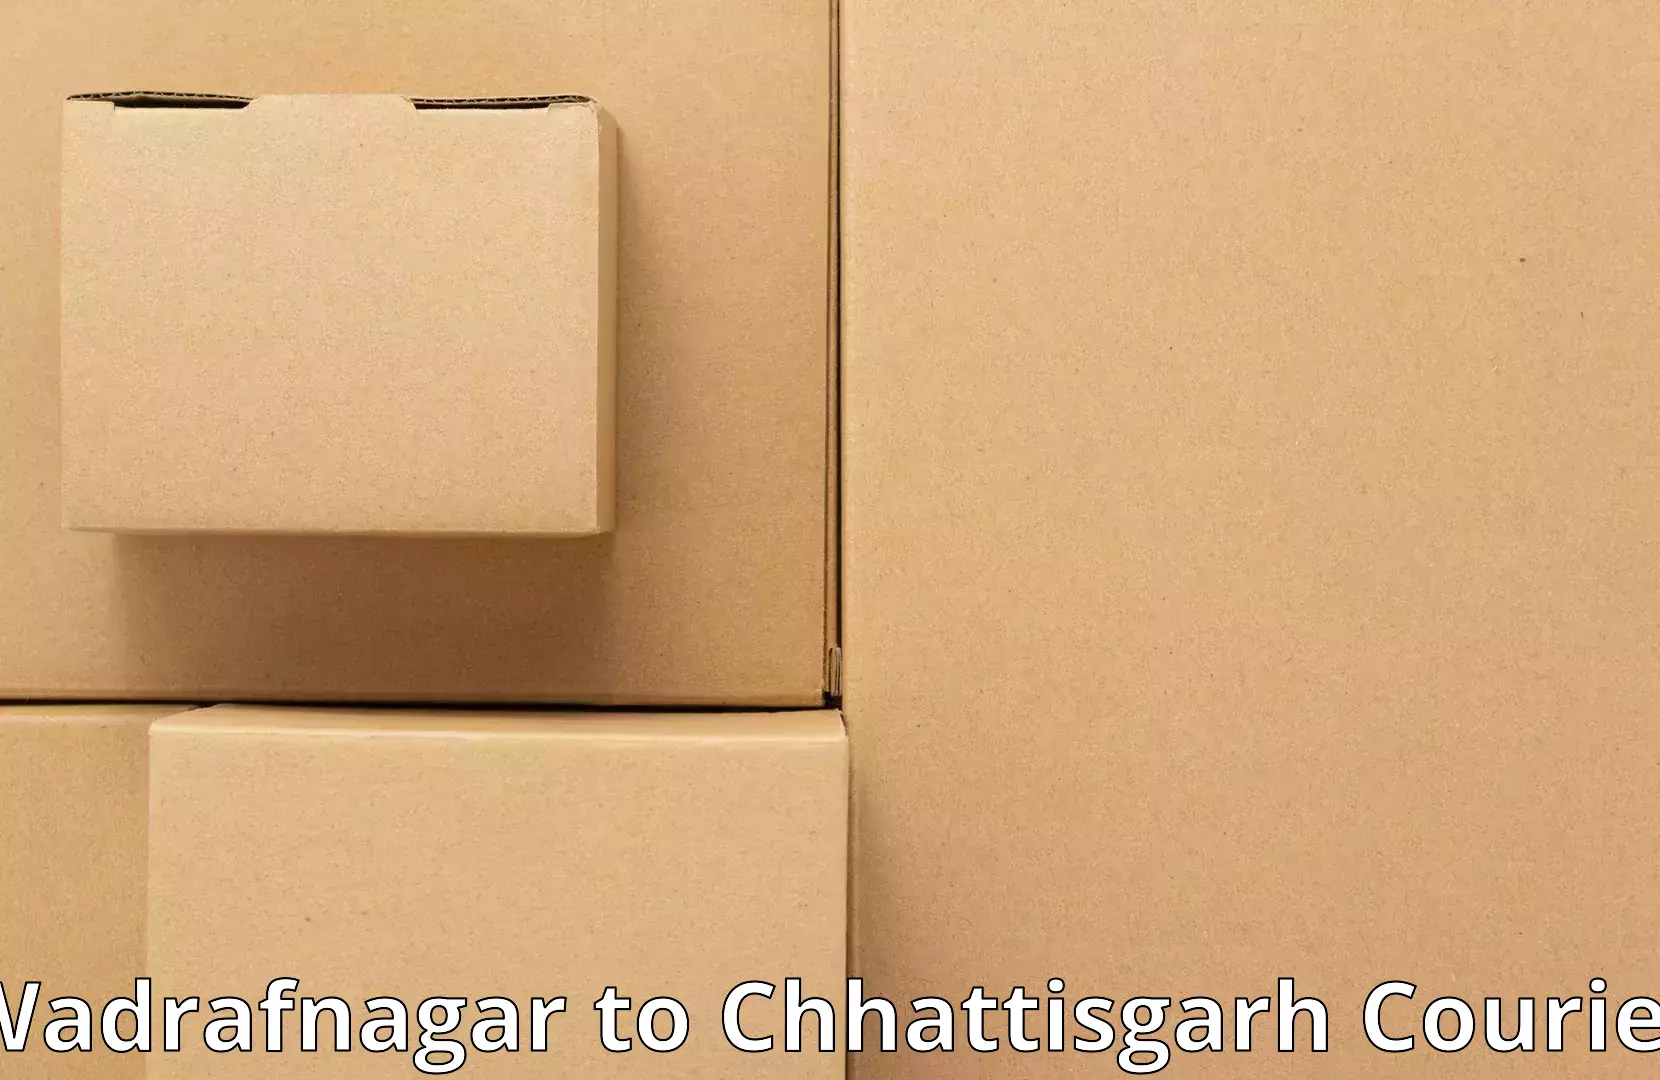 Home relocation solutions Wadrafnagar to Chhattisgarh